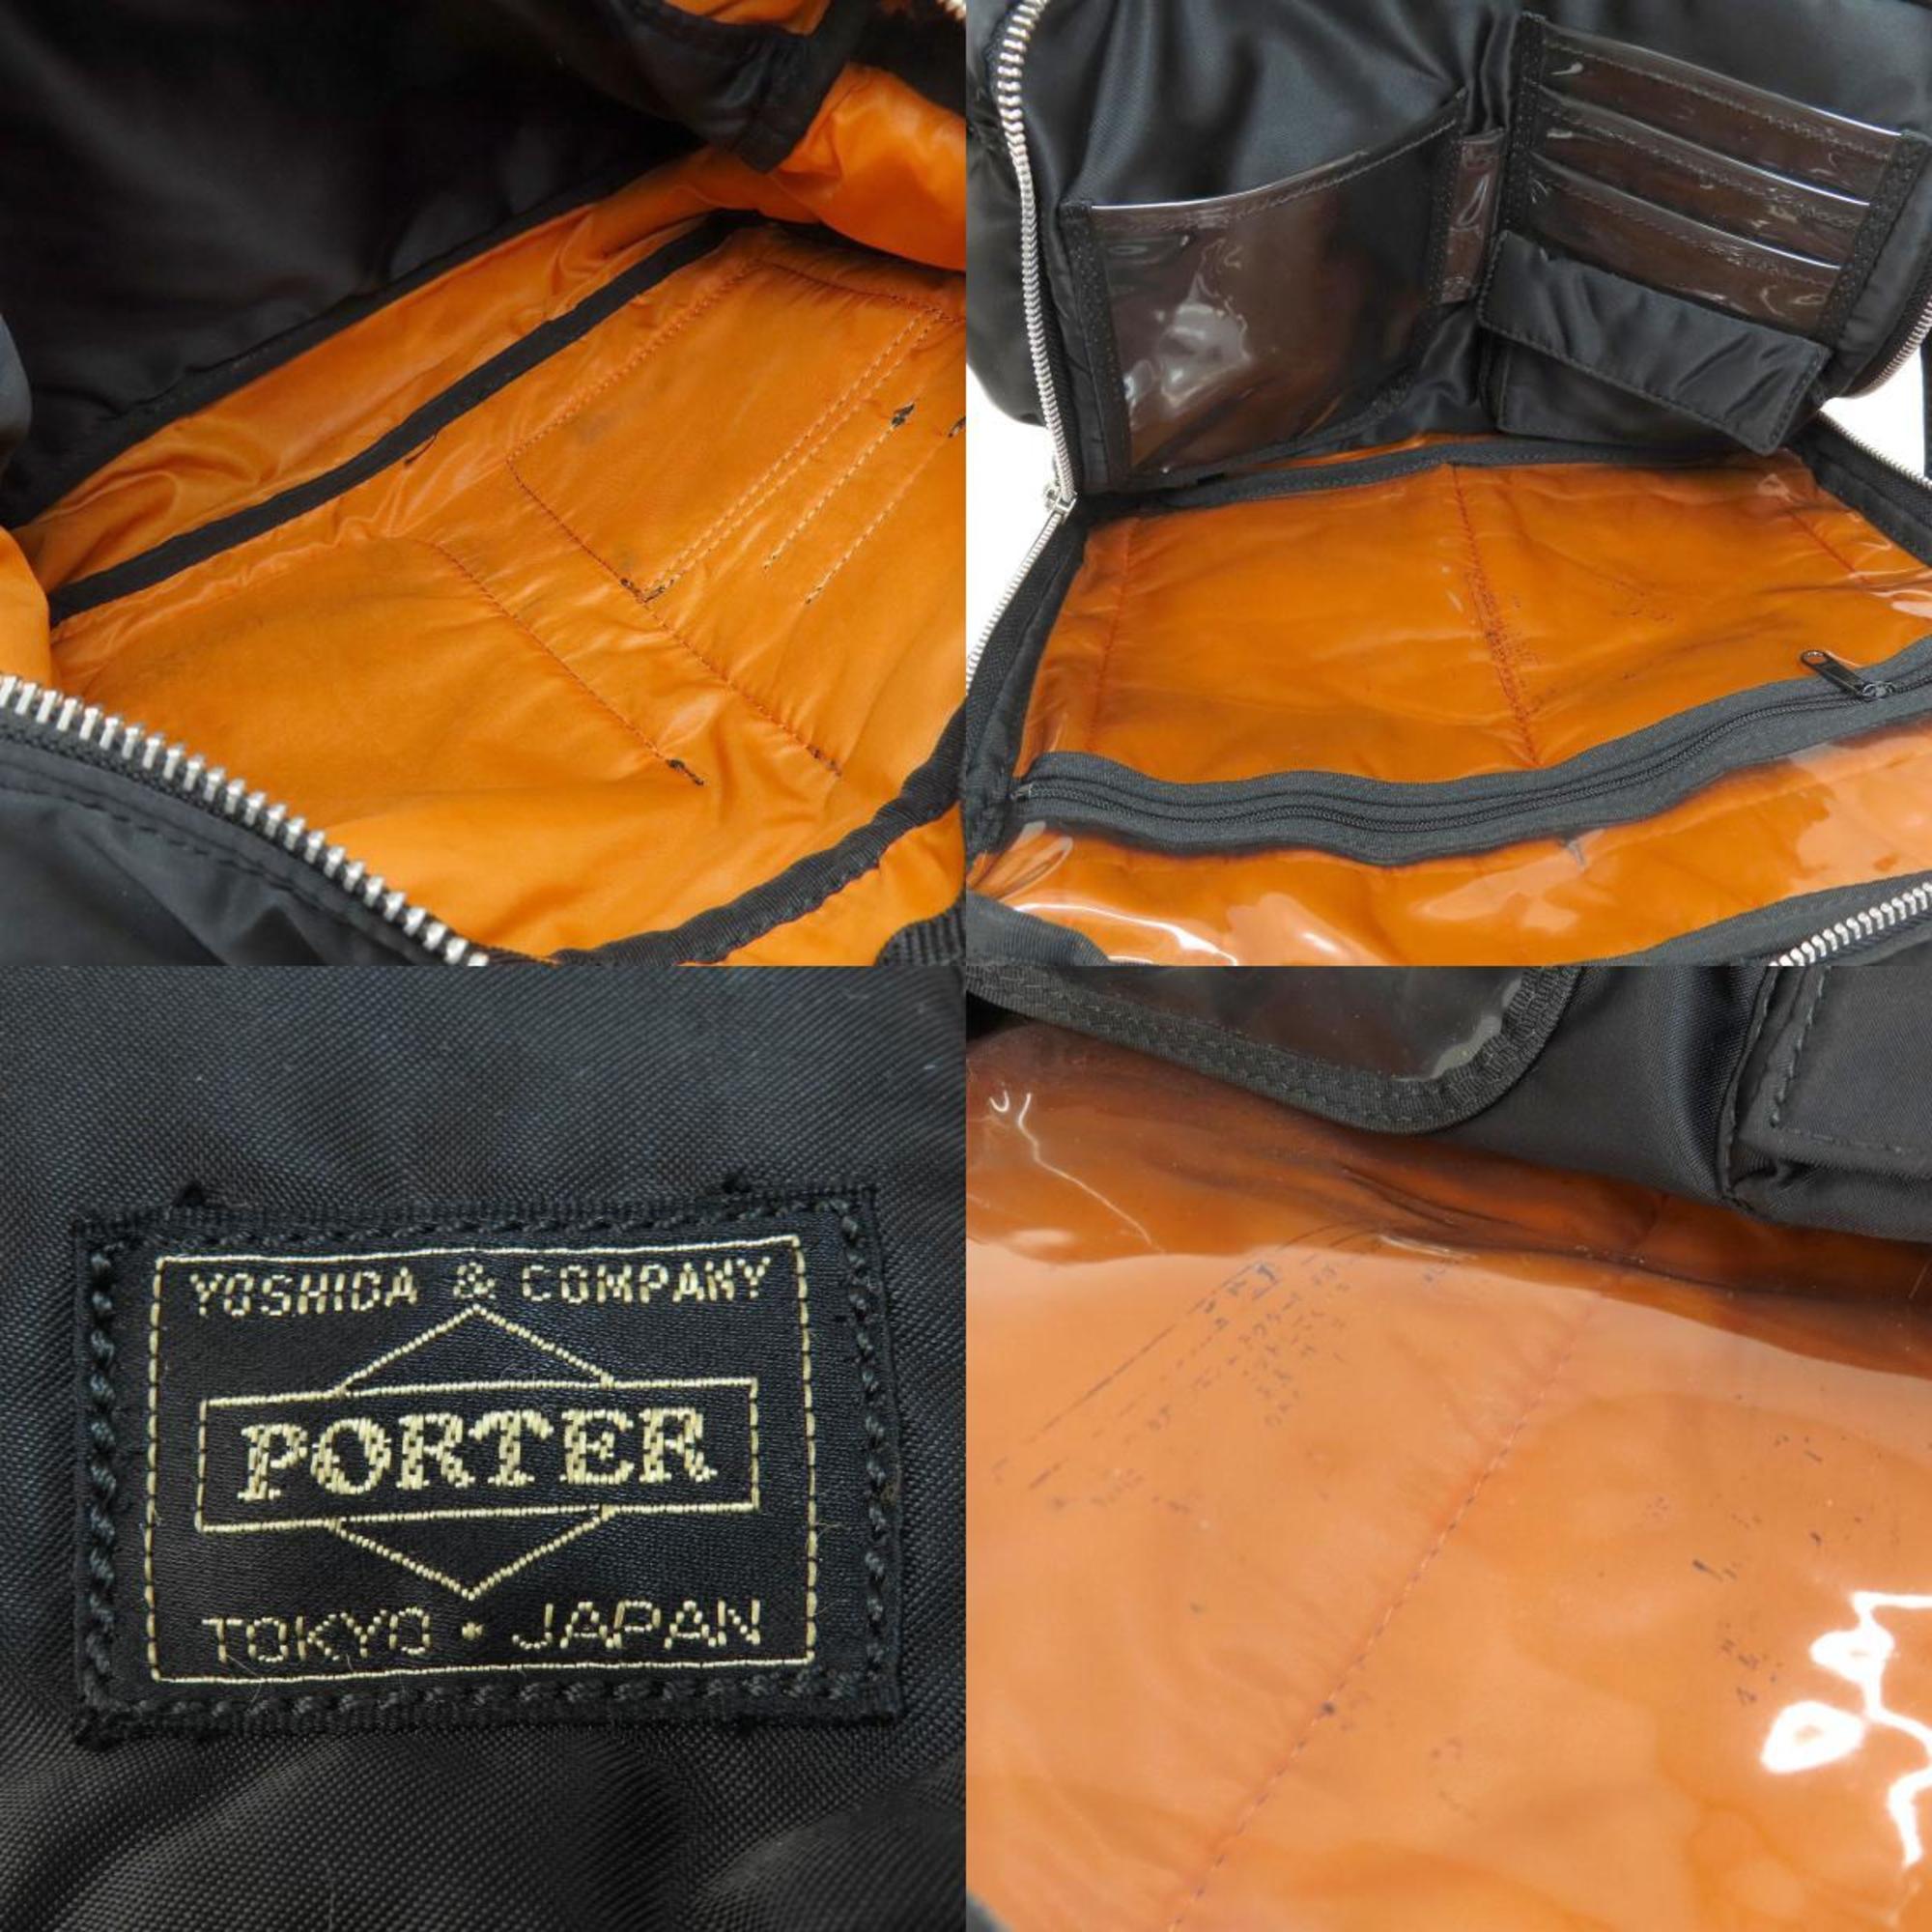 PORTER Shoulder Bag Nylon Material Women's